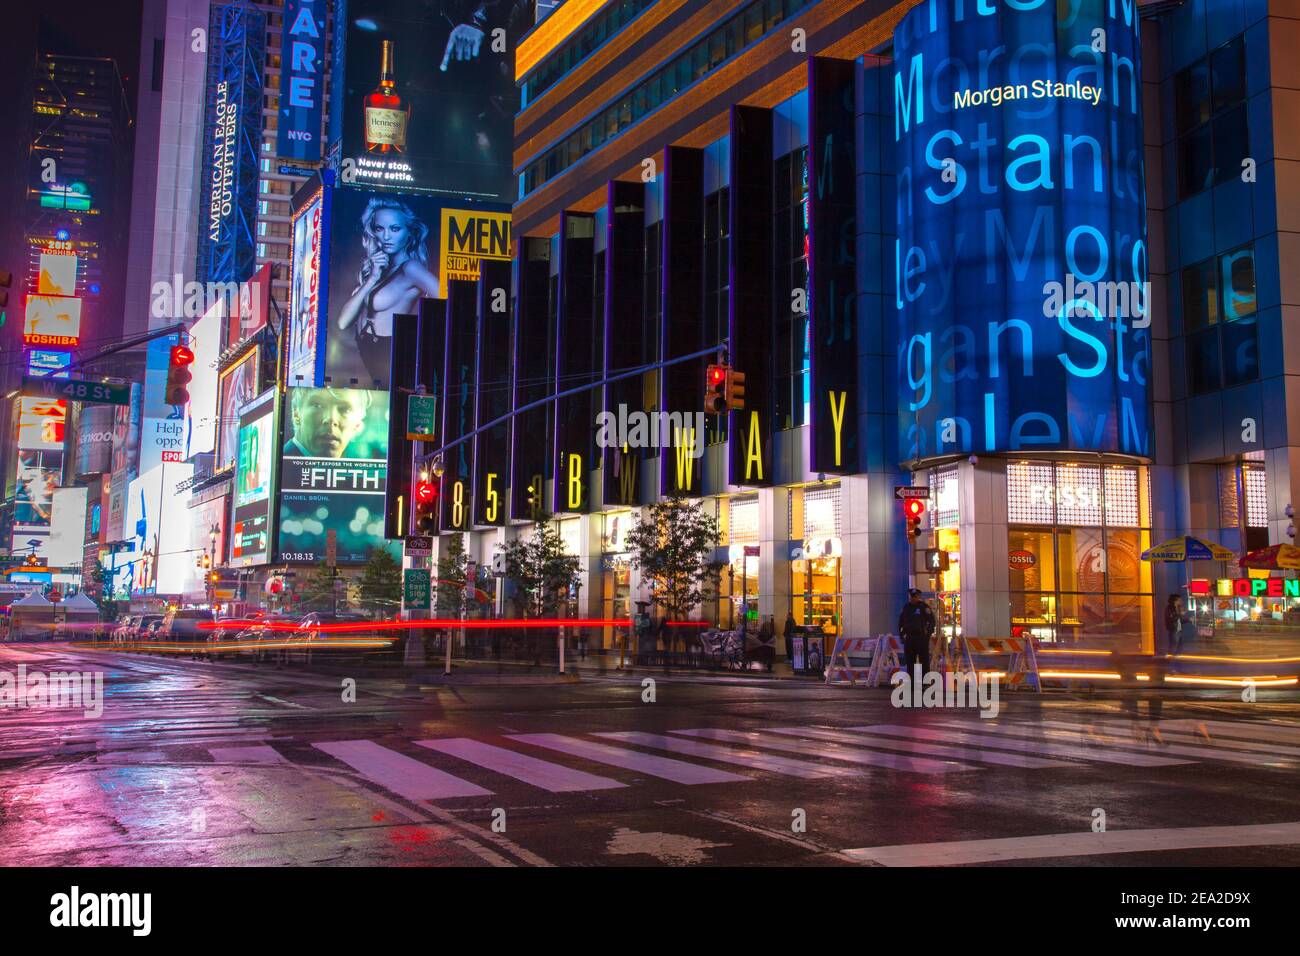 NEW YORK, USA - 20. SEPTEMBER 2013: Night Street broadway in New york . Gelbe Taxi, viele Menschen und Werbung im Freien. Langsame Verschlusszeit Stockfoto